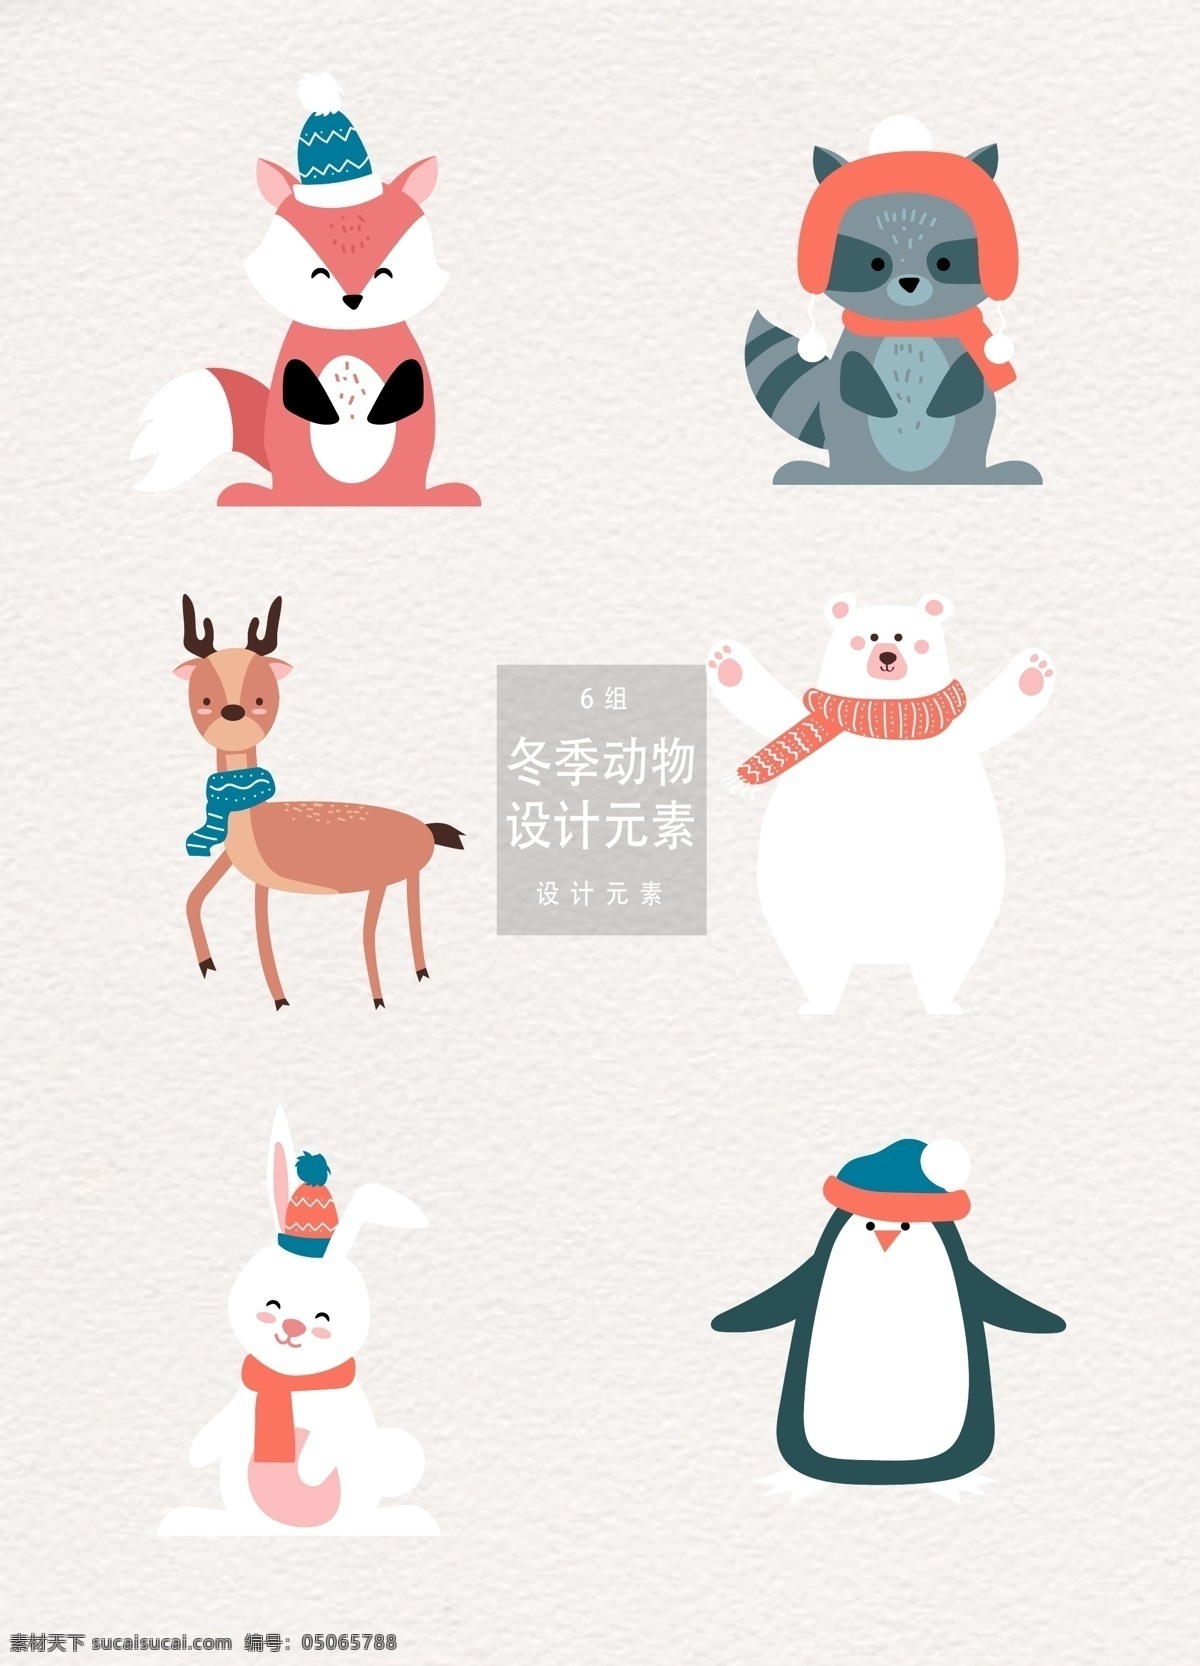 卡通 冬季 动物 元素 卡通动物 设计元素 企鹅 兔子 冬季动物 狐狸 麋鹿 驯鹿 北极熊